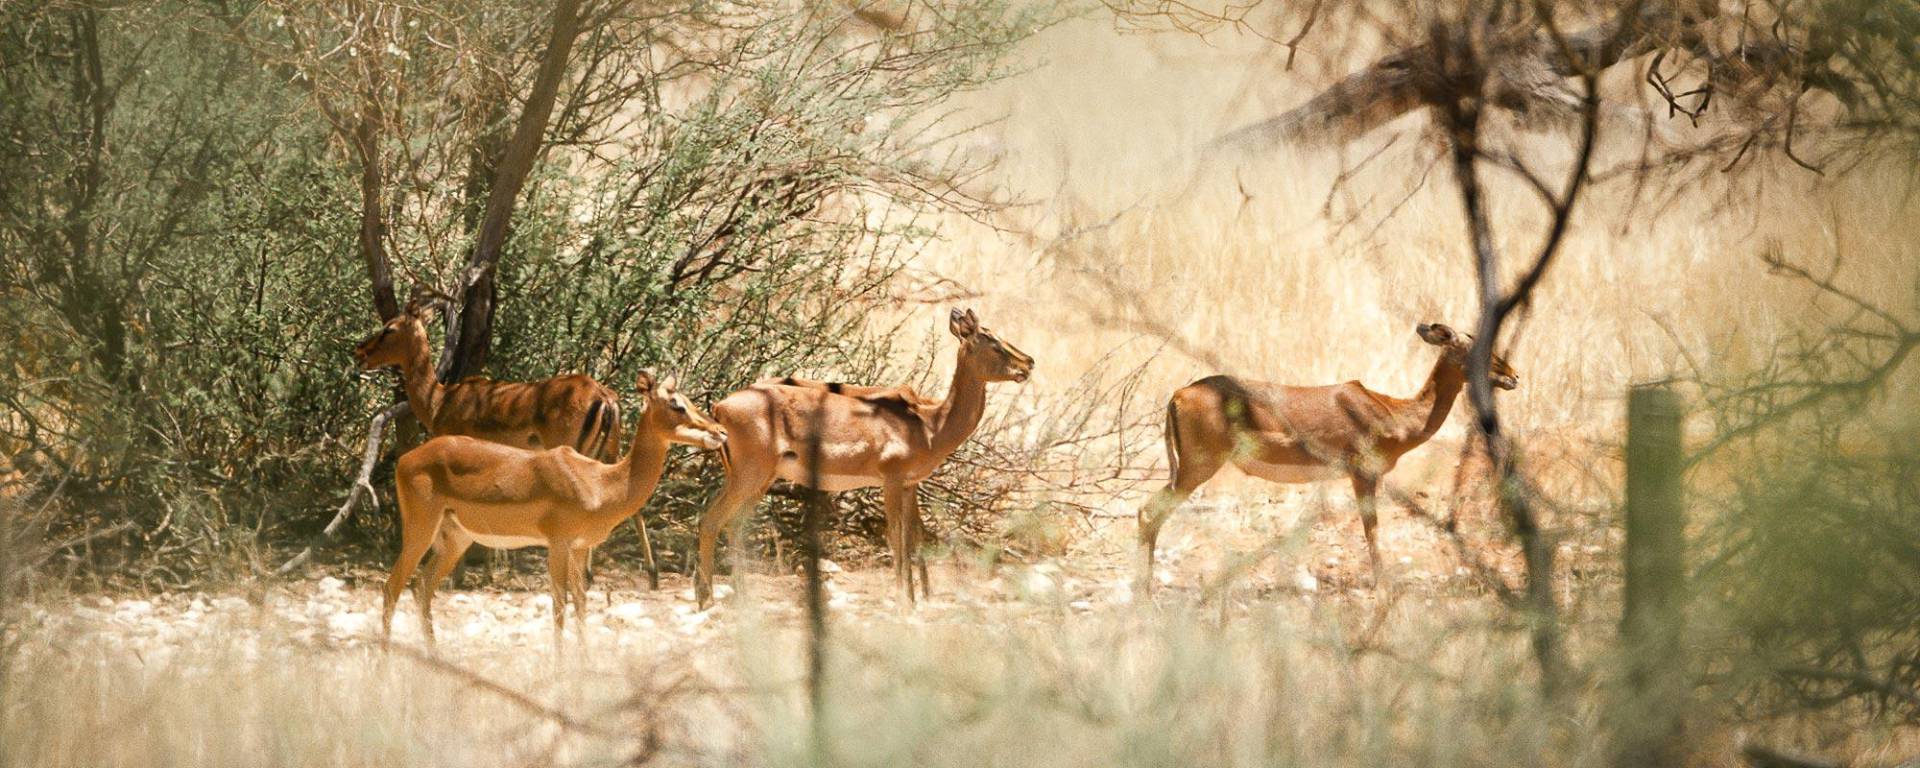 Impala im namibischen Busch